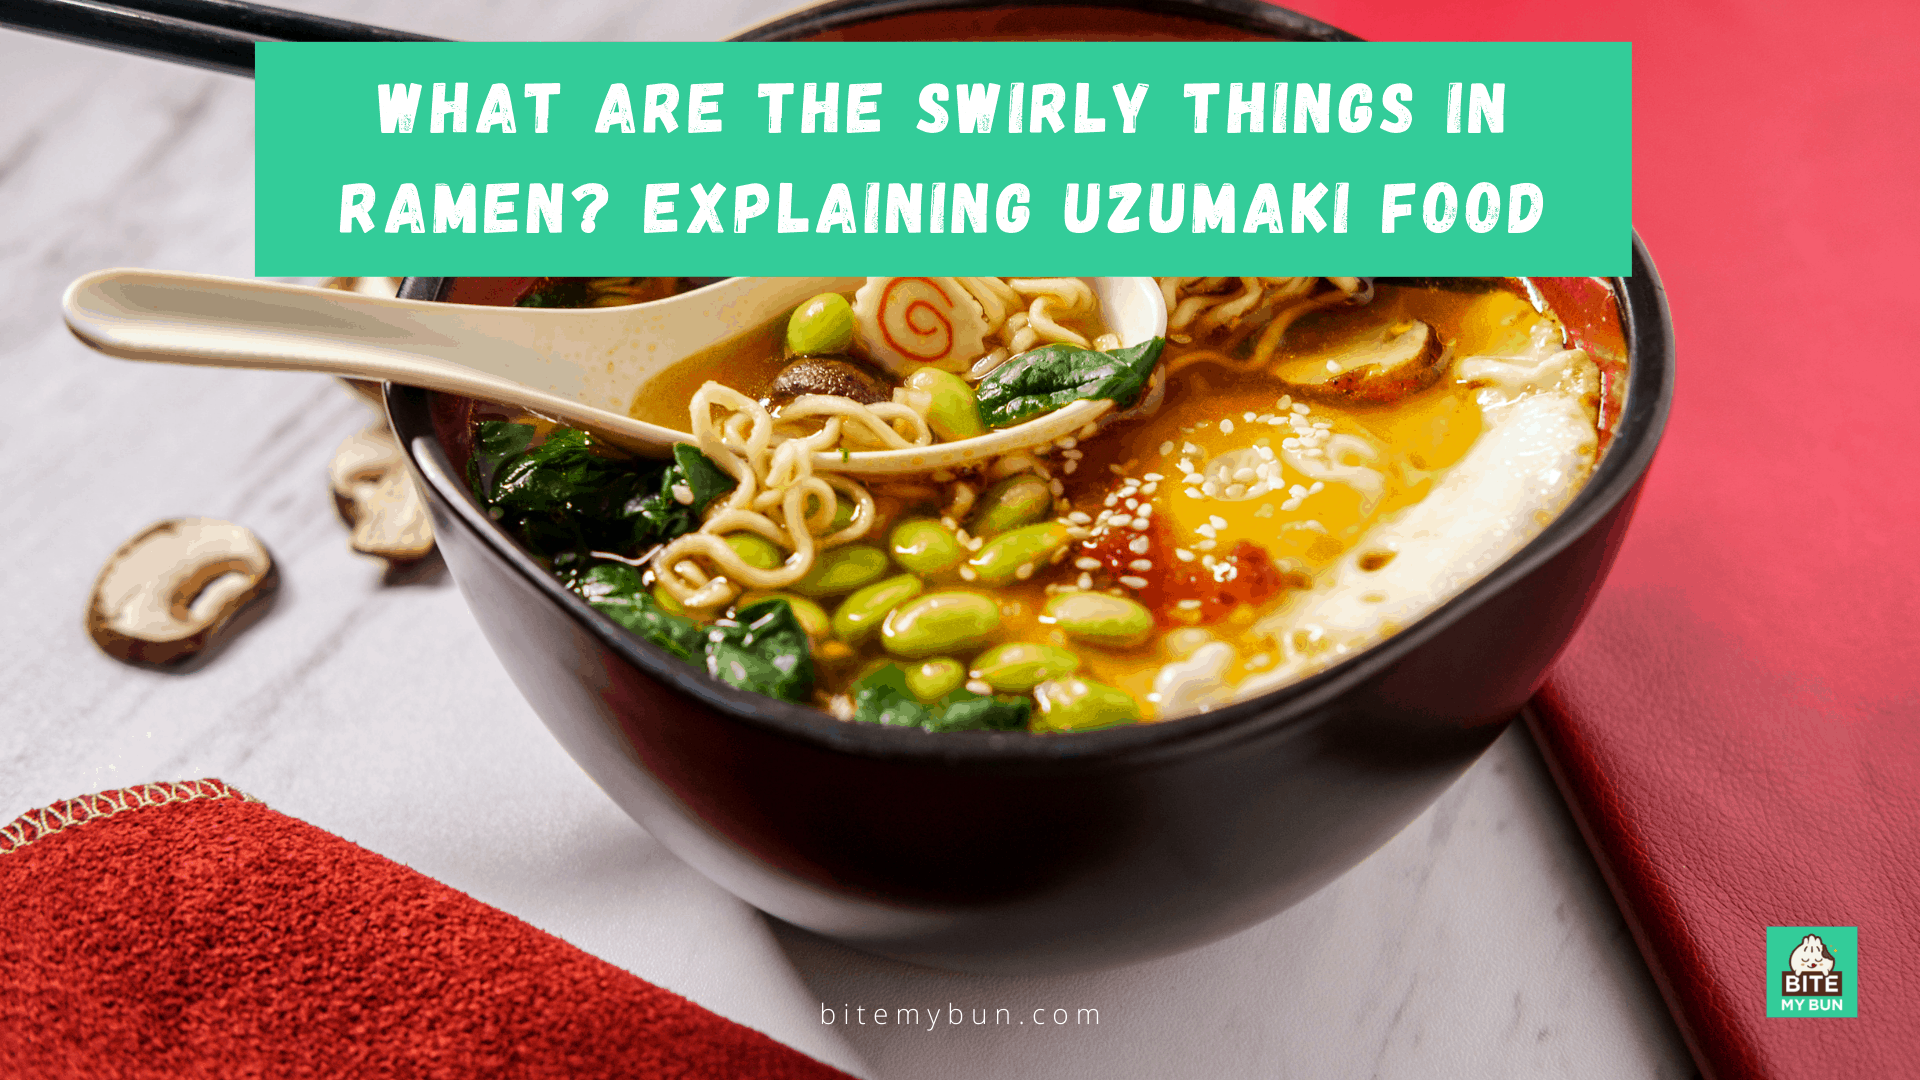 อะไรคือสิ่งที่หมุนวนในราเมน? อธิบายอาหารอุซึมากิ